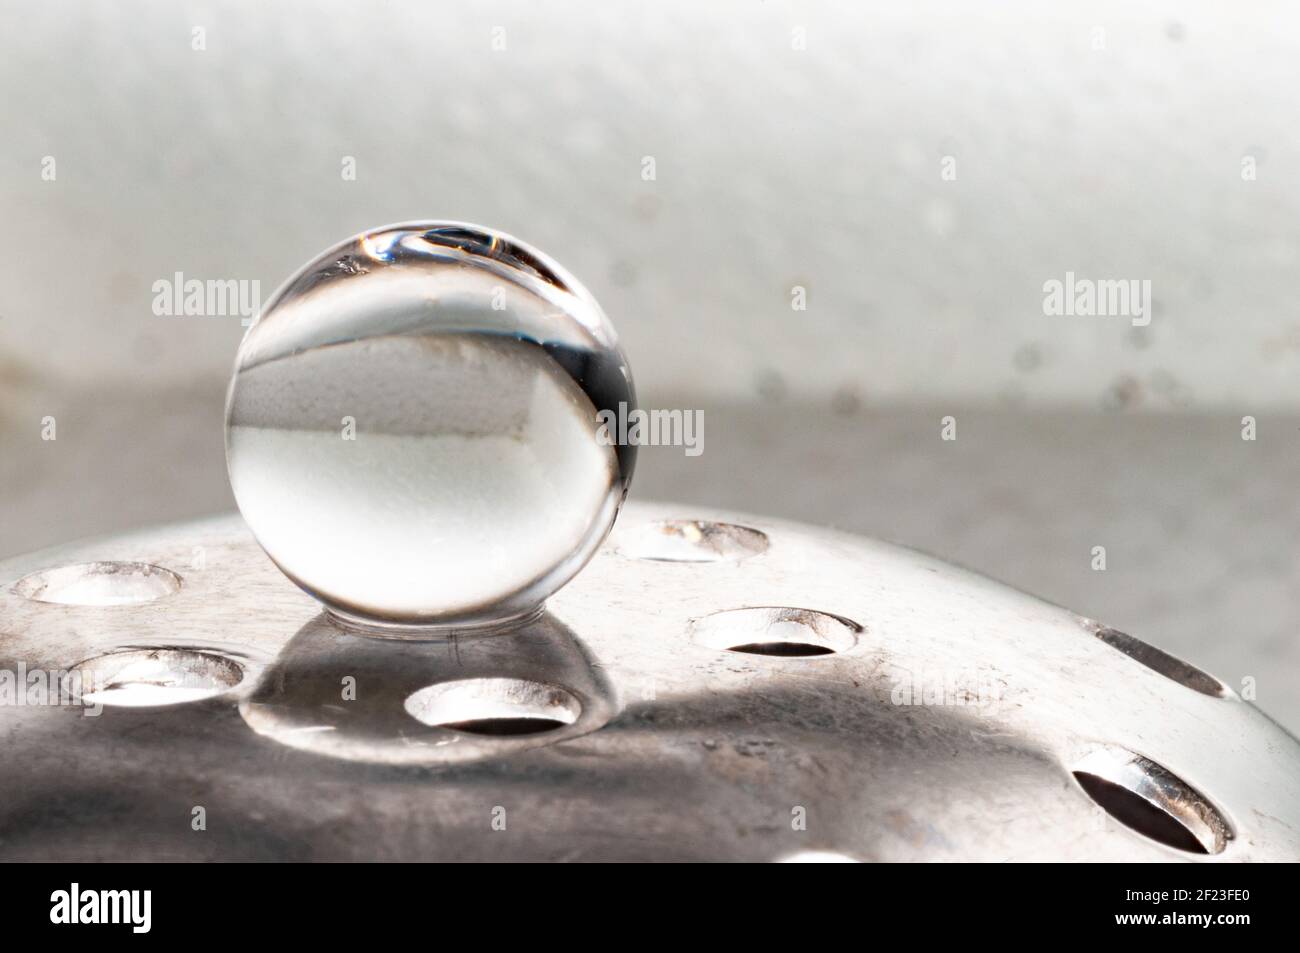 La sphère solitaire en équilibre sur support métallique en blanc arrière-plan Banque D'Images